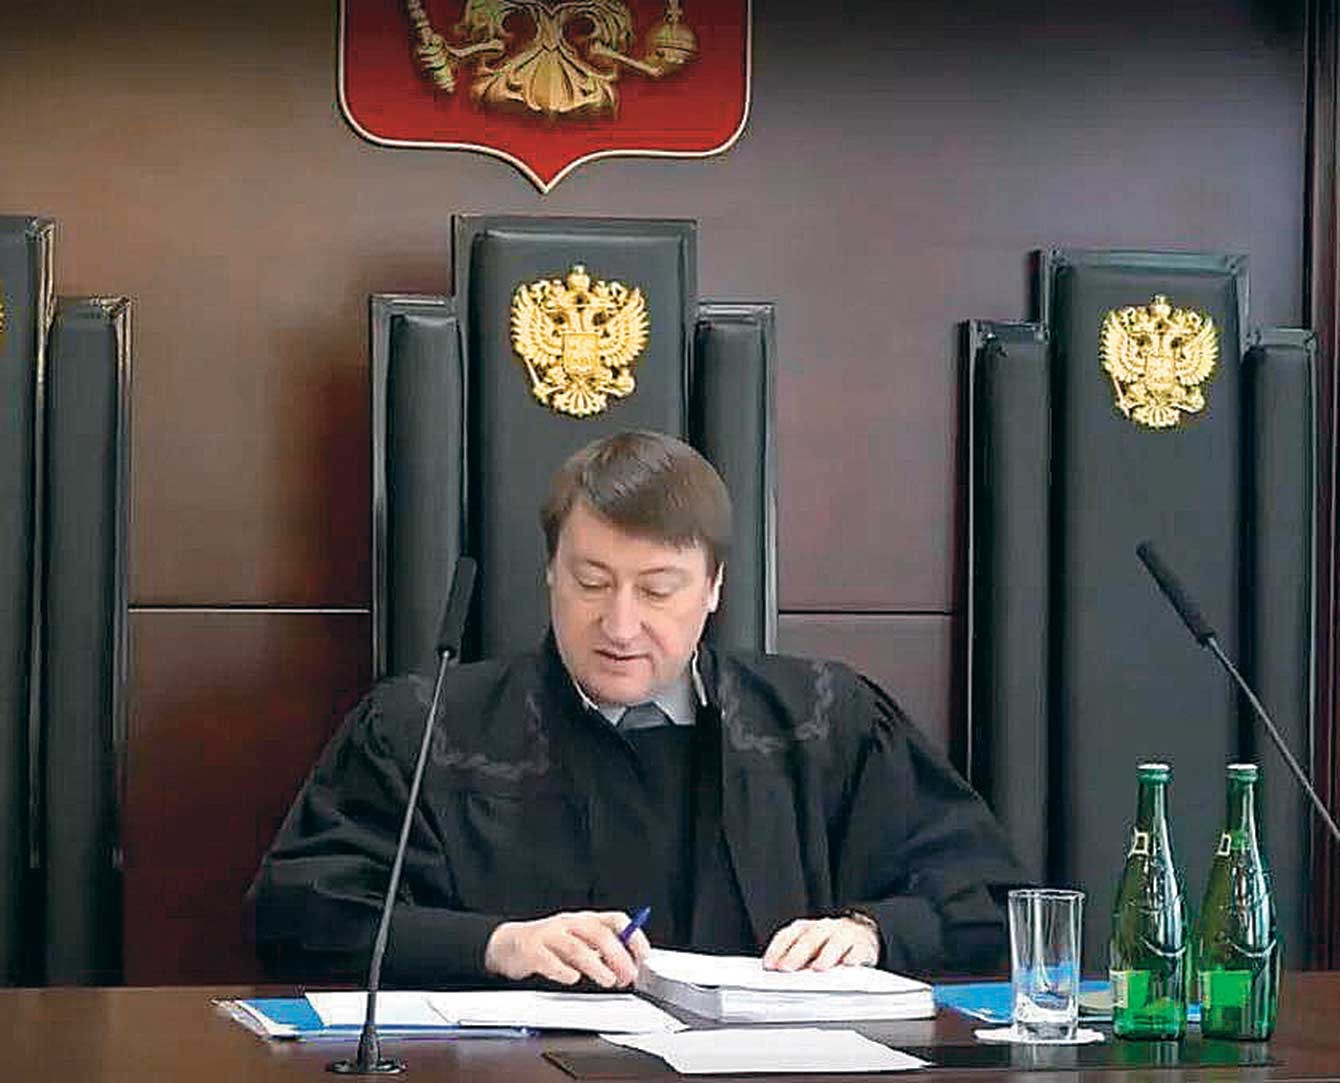 Сергей Пашин федеральный судья